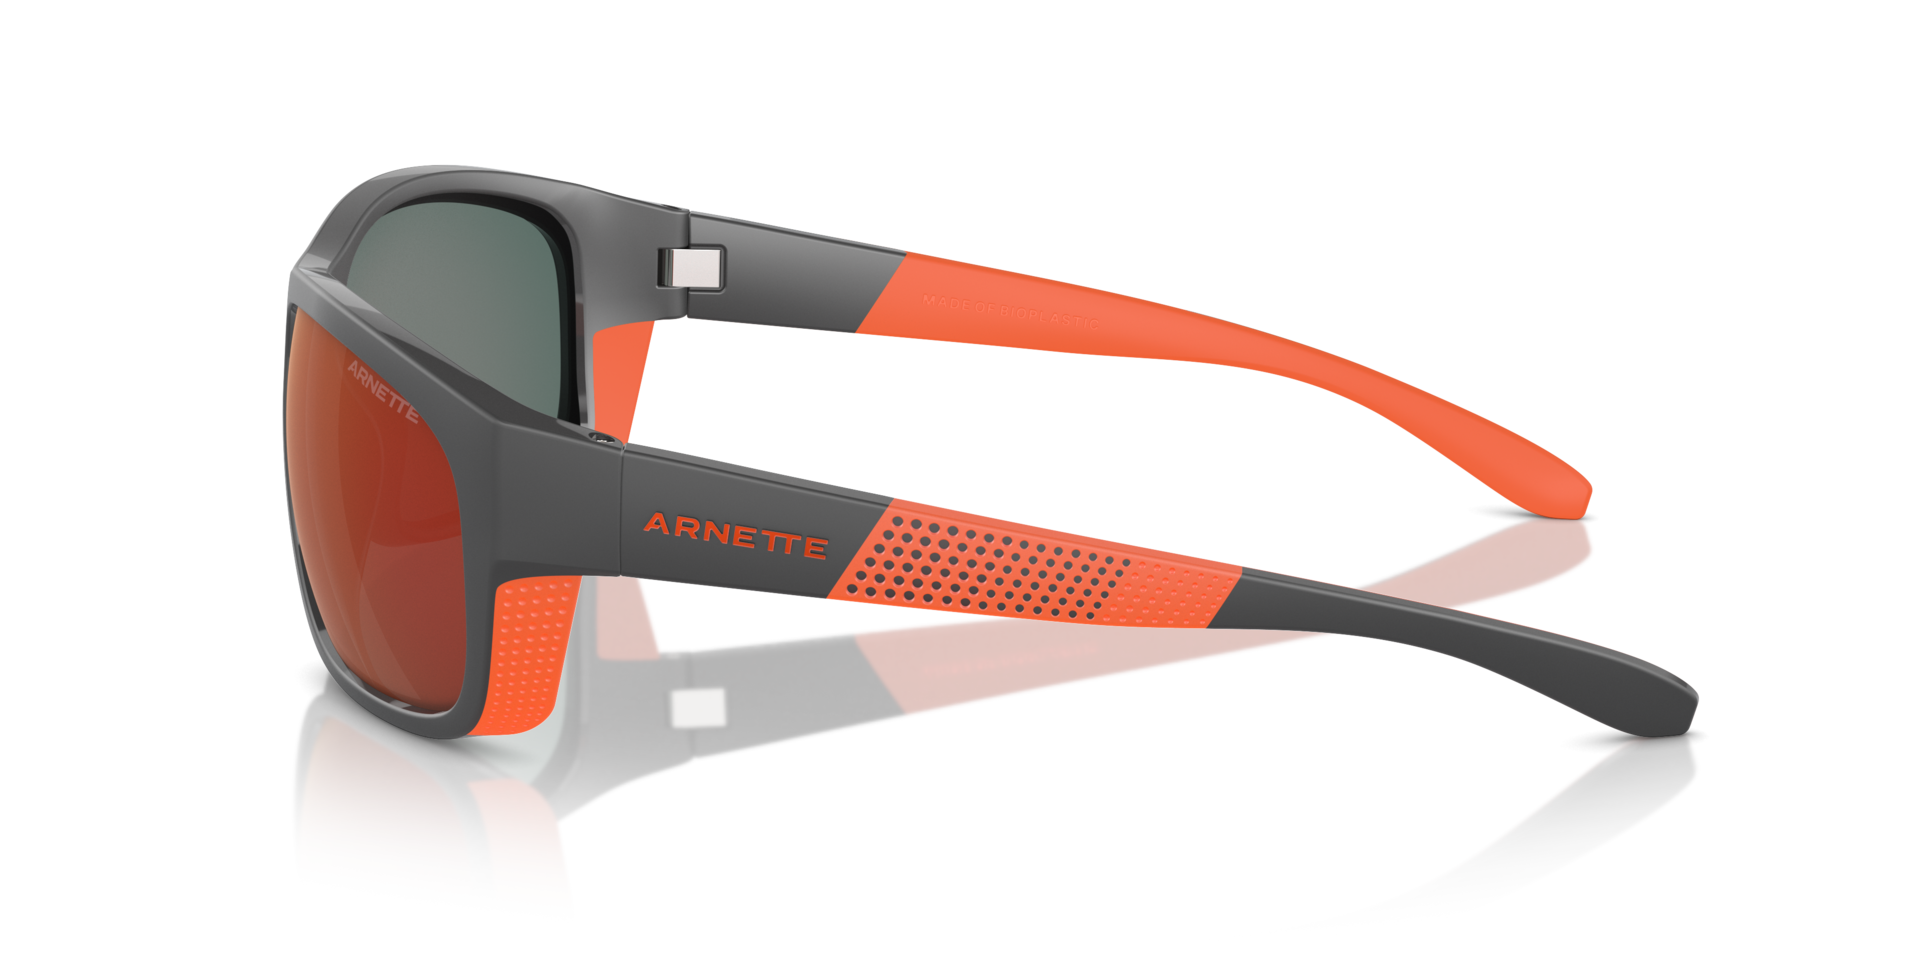 Das Bild zeigt die Sonnenbrille AN4337 28706Q von der Marke Arnette in grau/orange.